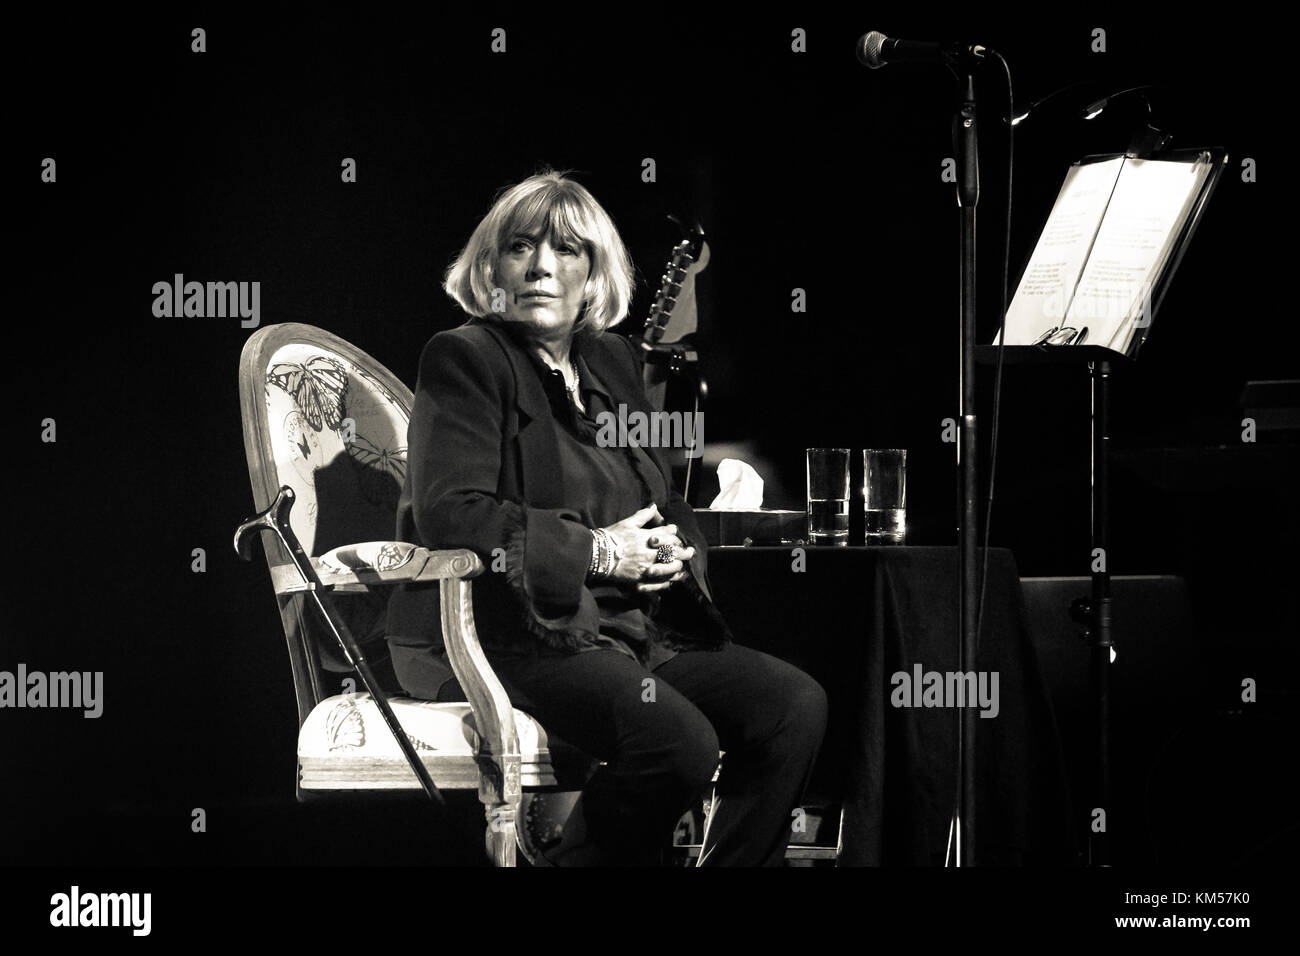 La cantante, cantautrice e attrice inglese Marianne Faithfull ha tenuto un concerto dal vivo al Capitol Theatre durante il festival di musica tedesca New Fall Festival 2015 a Düsseldorf. Germania, 31/10 2015. Foto Stock